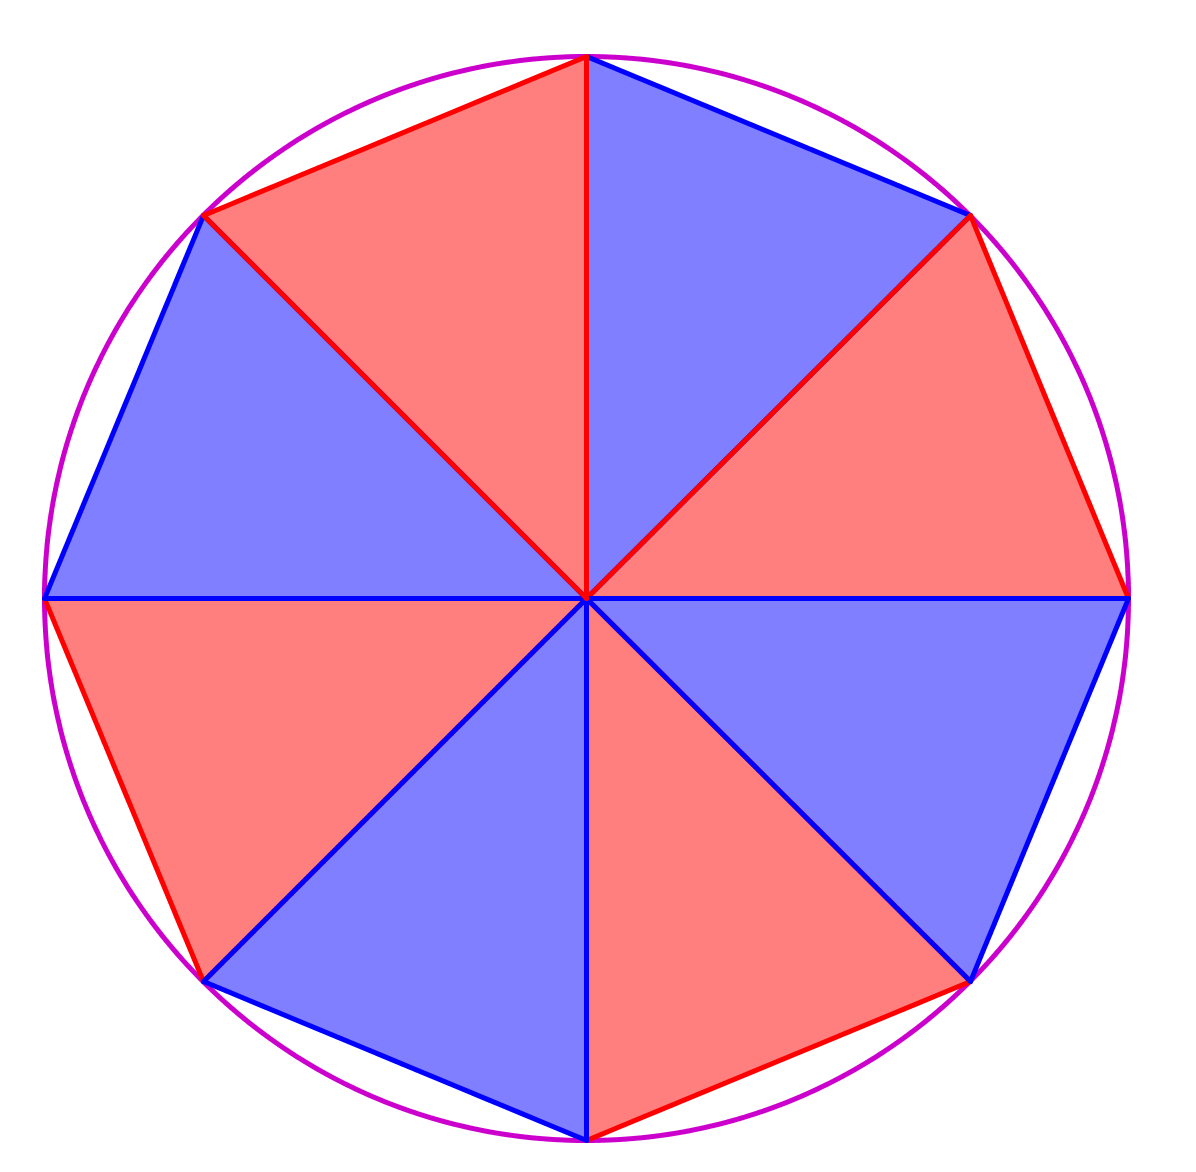 Andre græske matematikere korder i cirklen, er sidelængden lidt mindre end cirklens halve omkreds, men hvis antallet af trekanter vokser, bliver fejlen mindre og mindre. Fig.